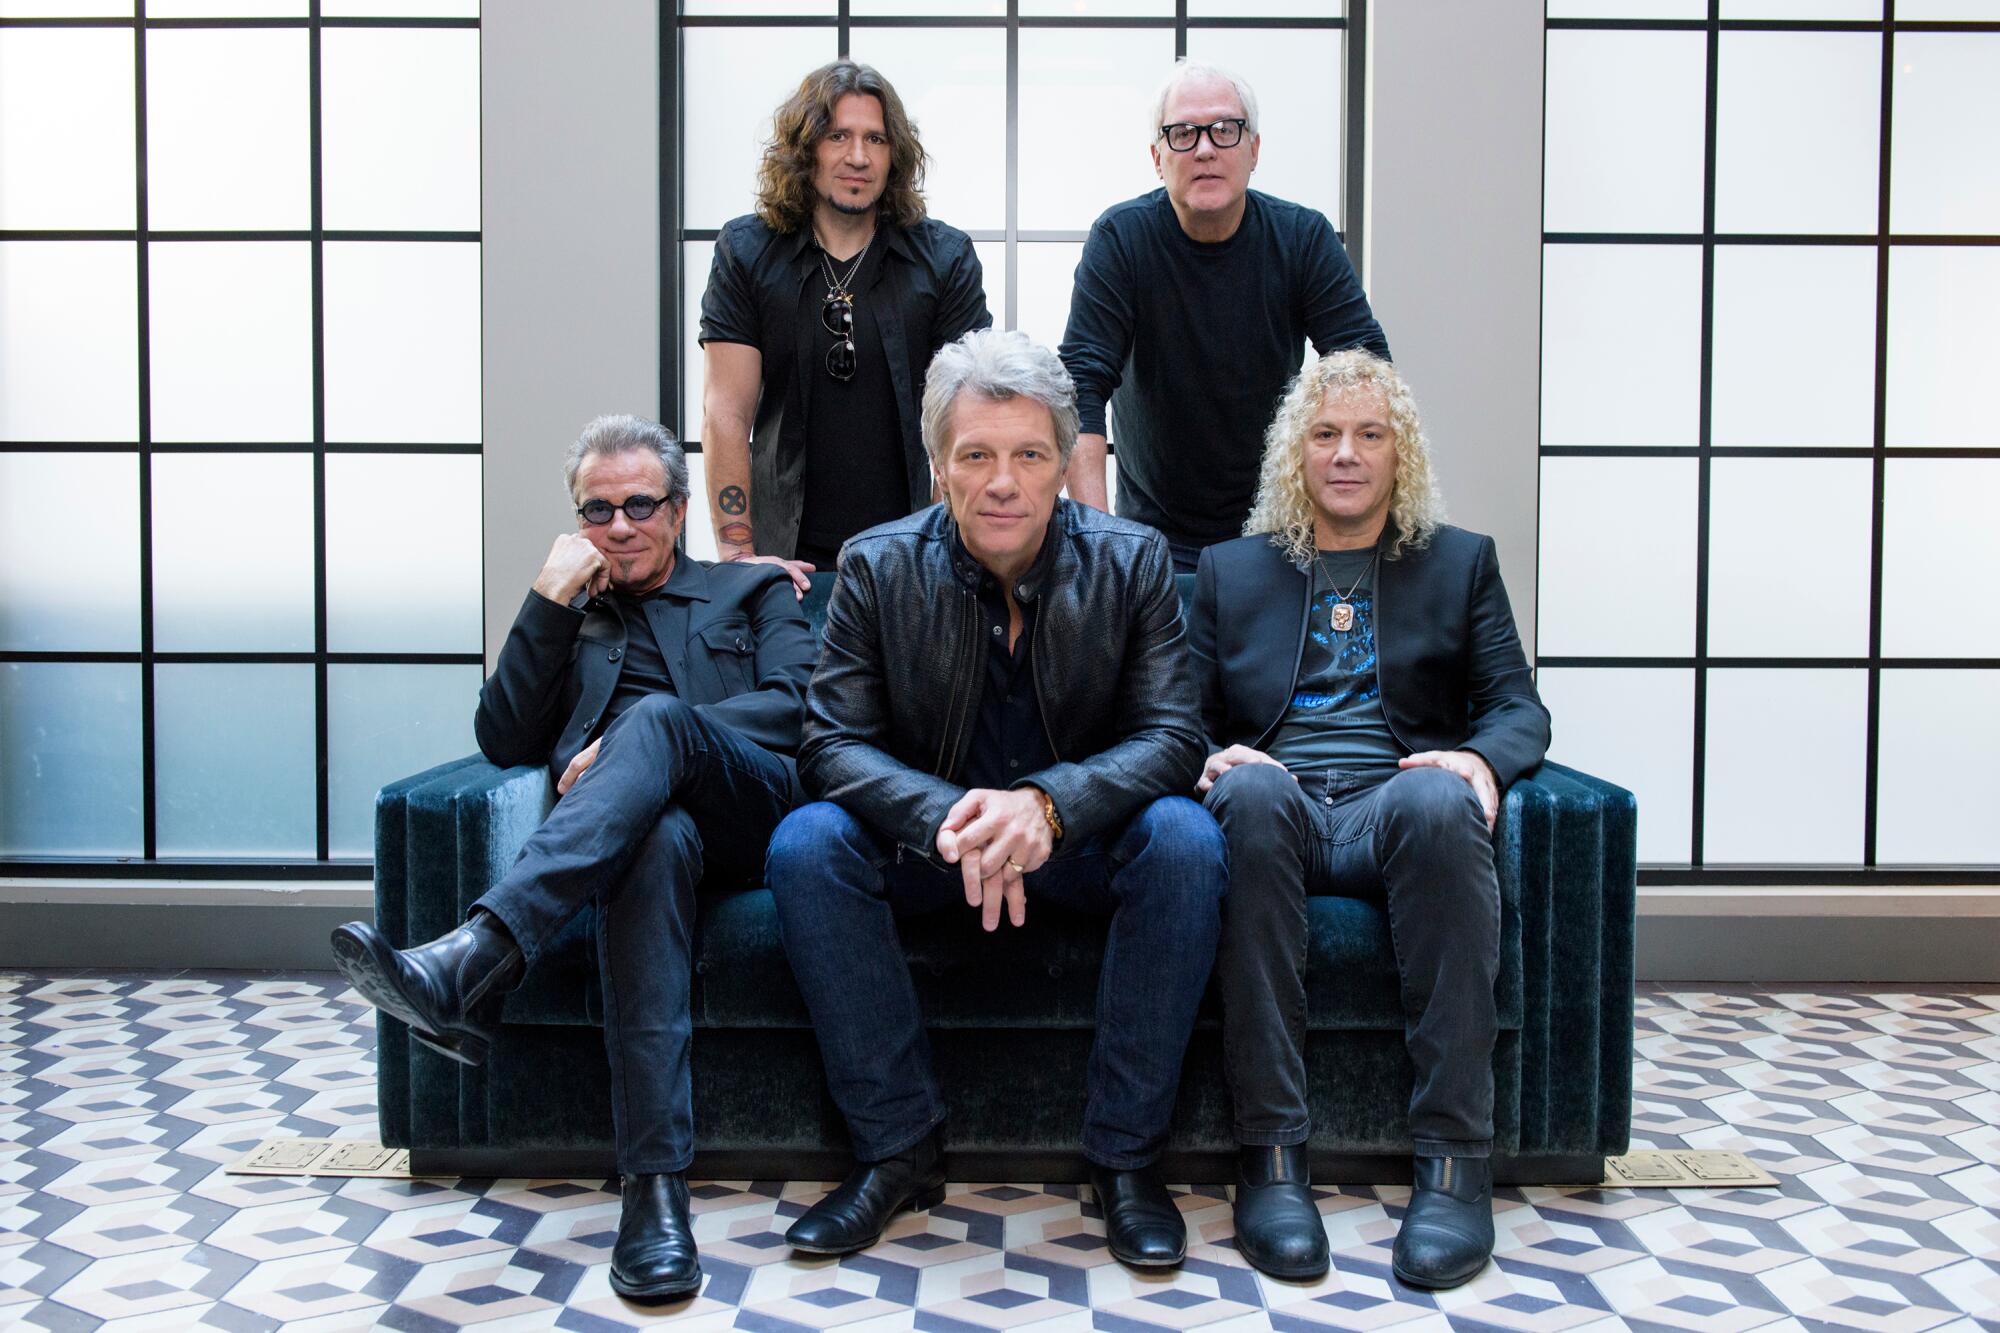 Los integrantes de Bon Jovi fila frontal de izquierda a derecha, Tico Torres